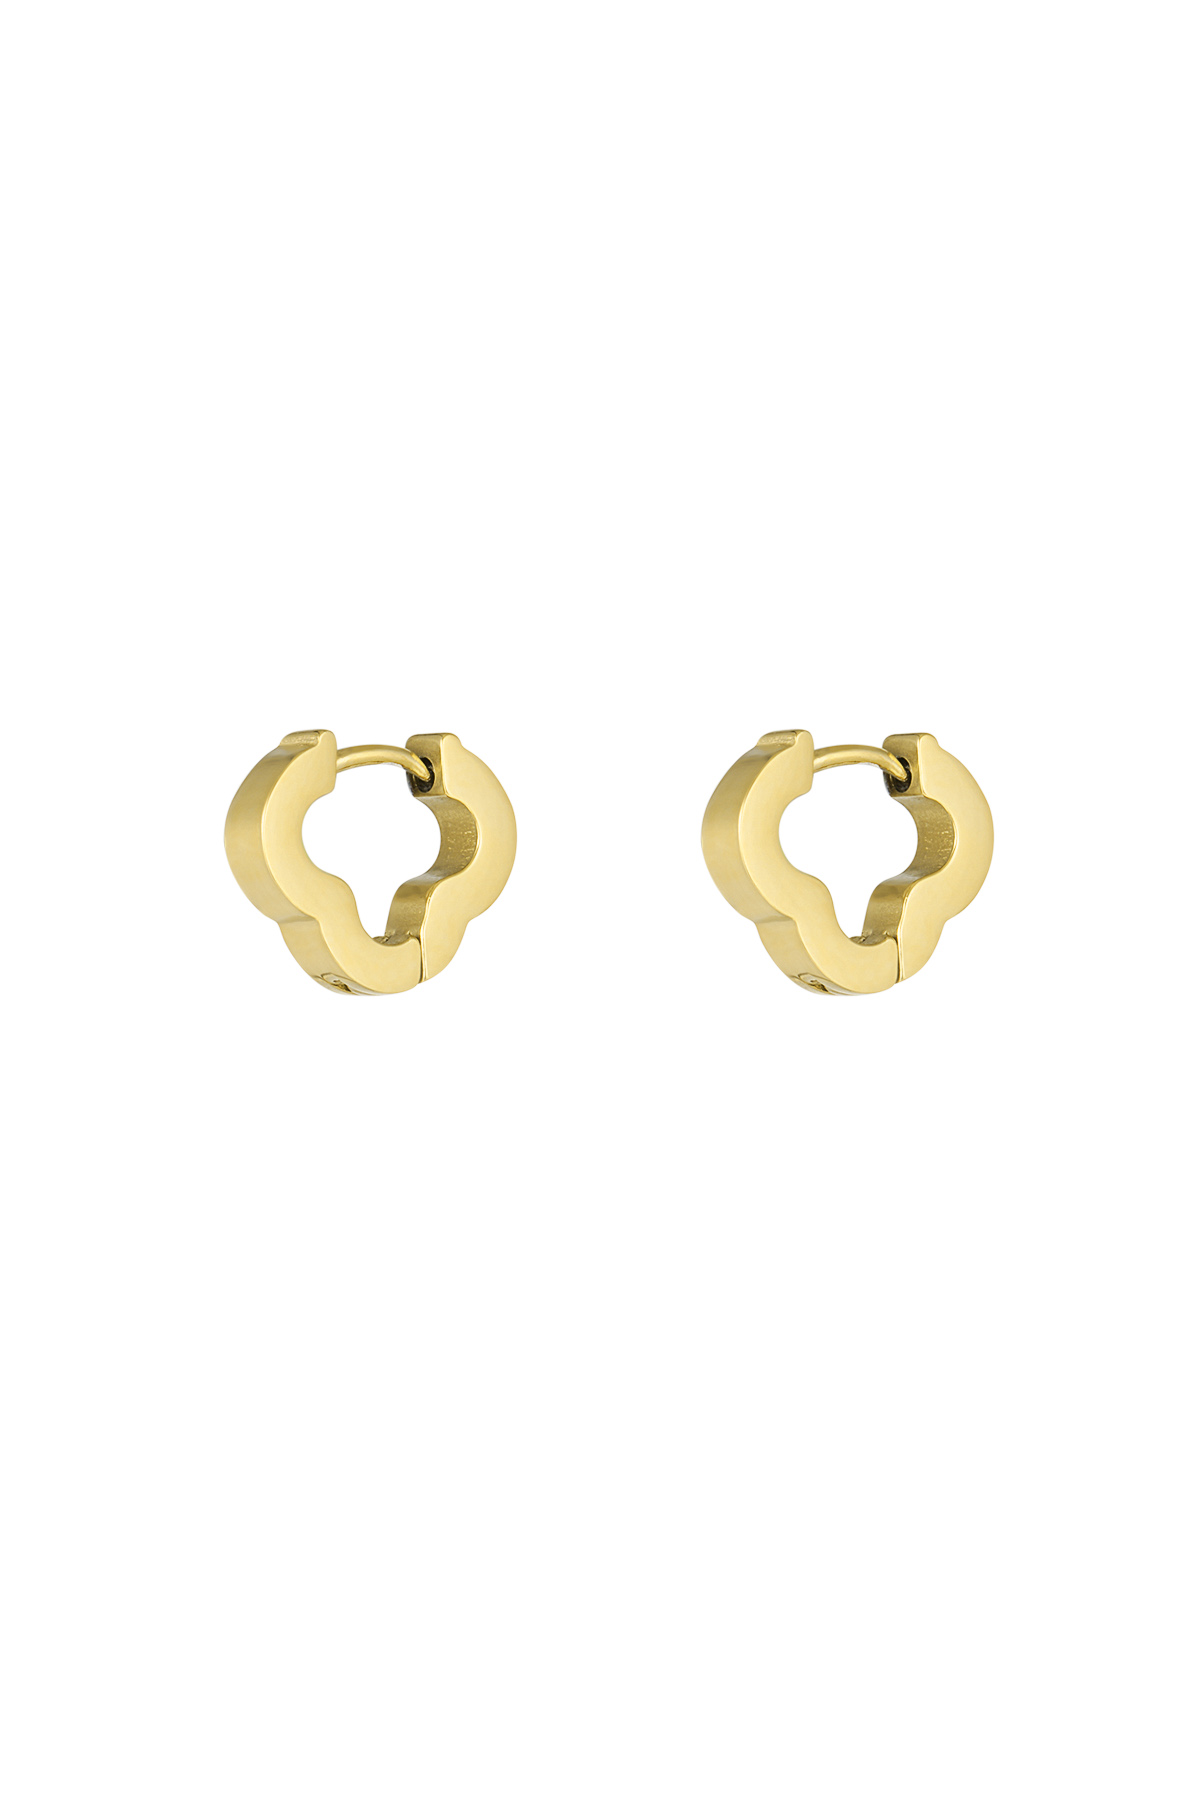 Einfache Kleeblatt-Ohrringe klein – Gold 